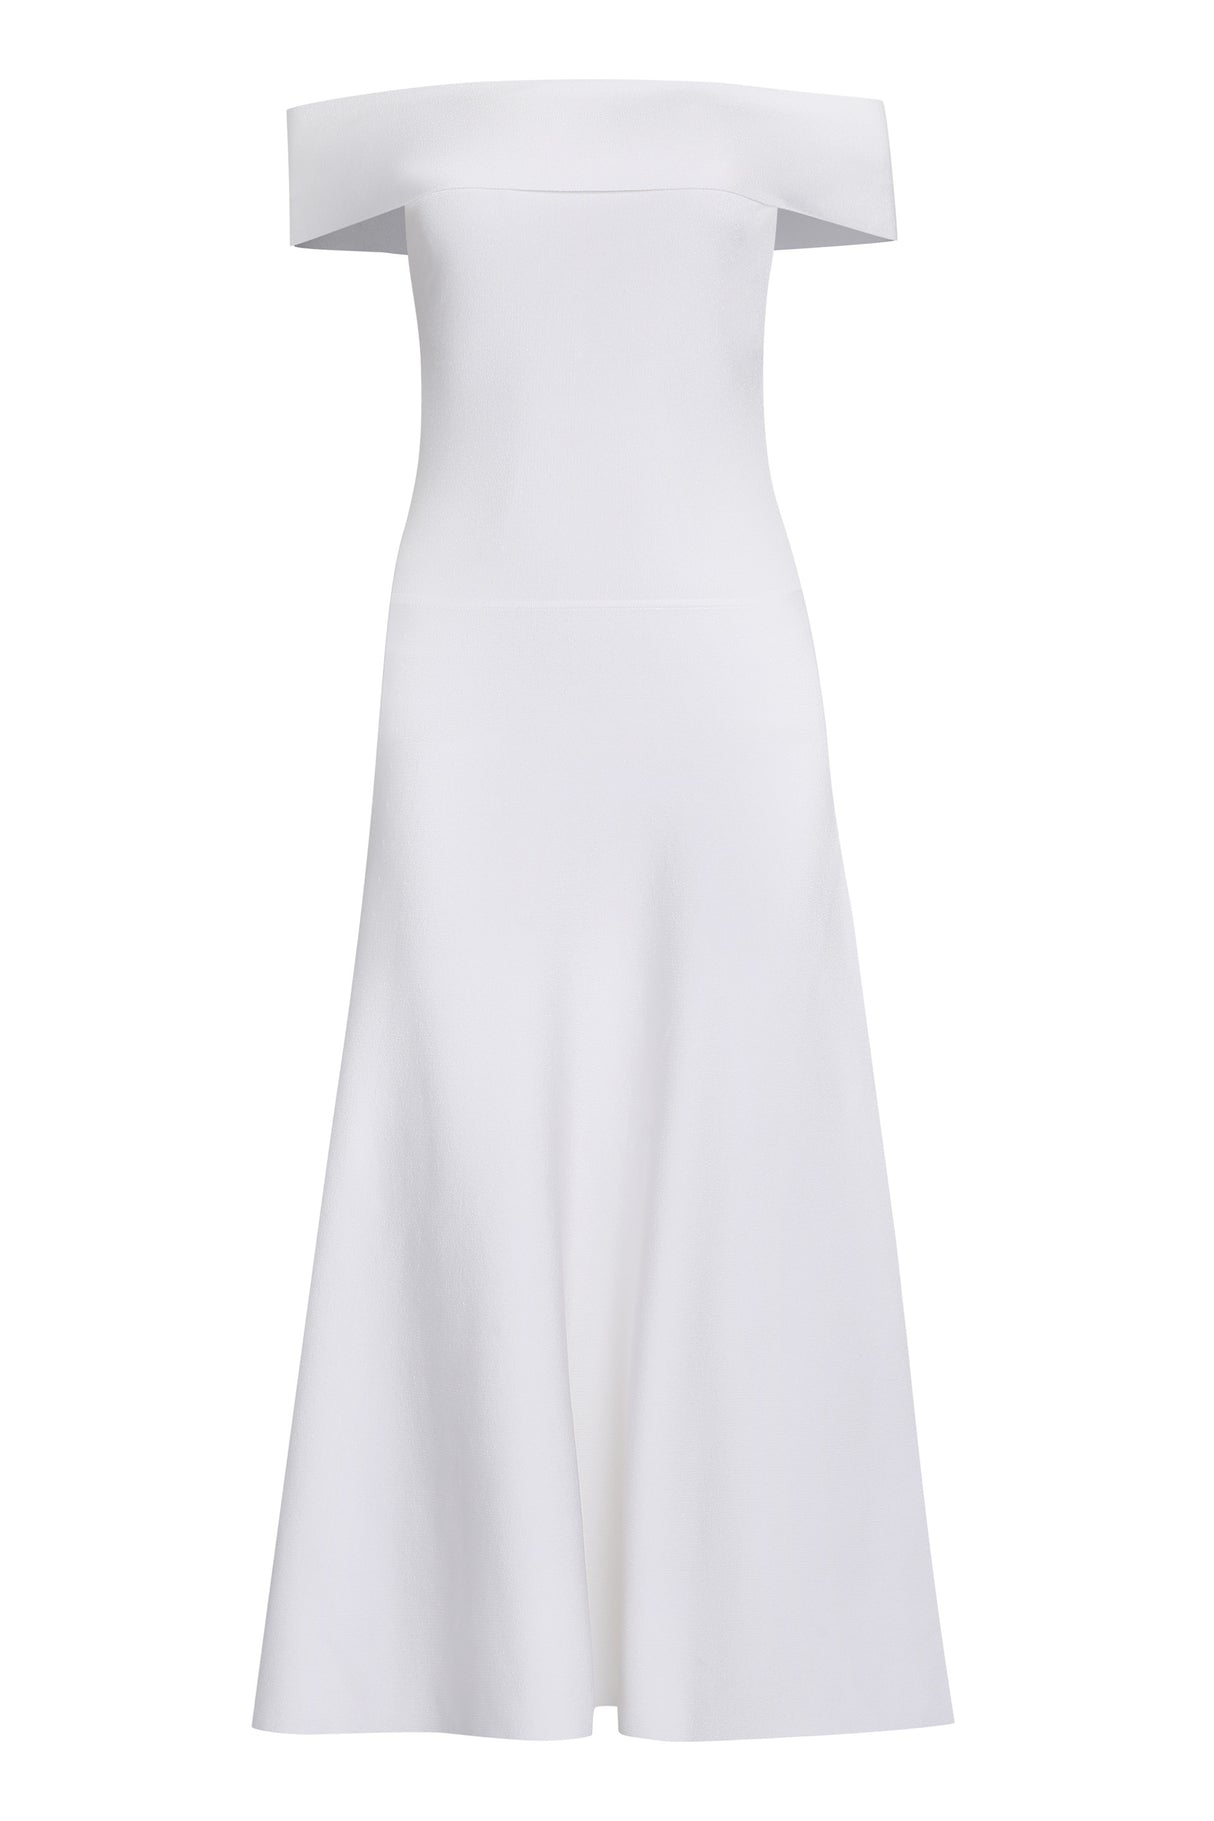 FABIANA FILIPPI Stunning White Flared Skirt Viscose Dress for Women - SS24